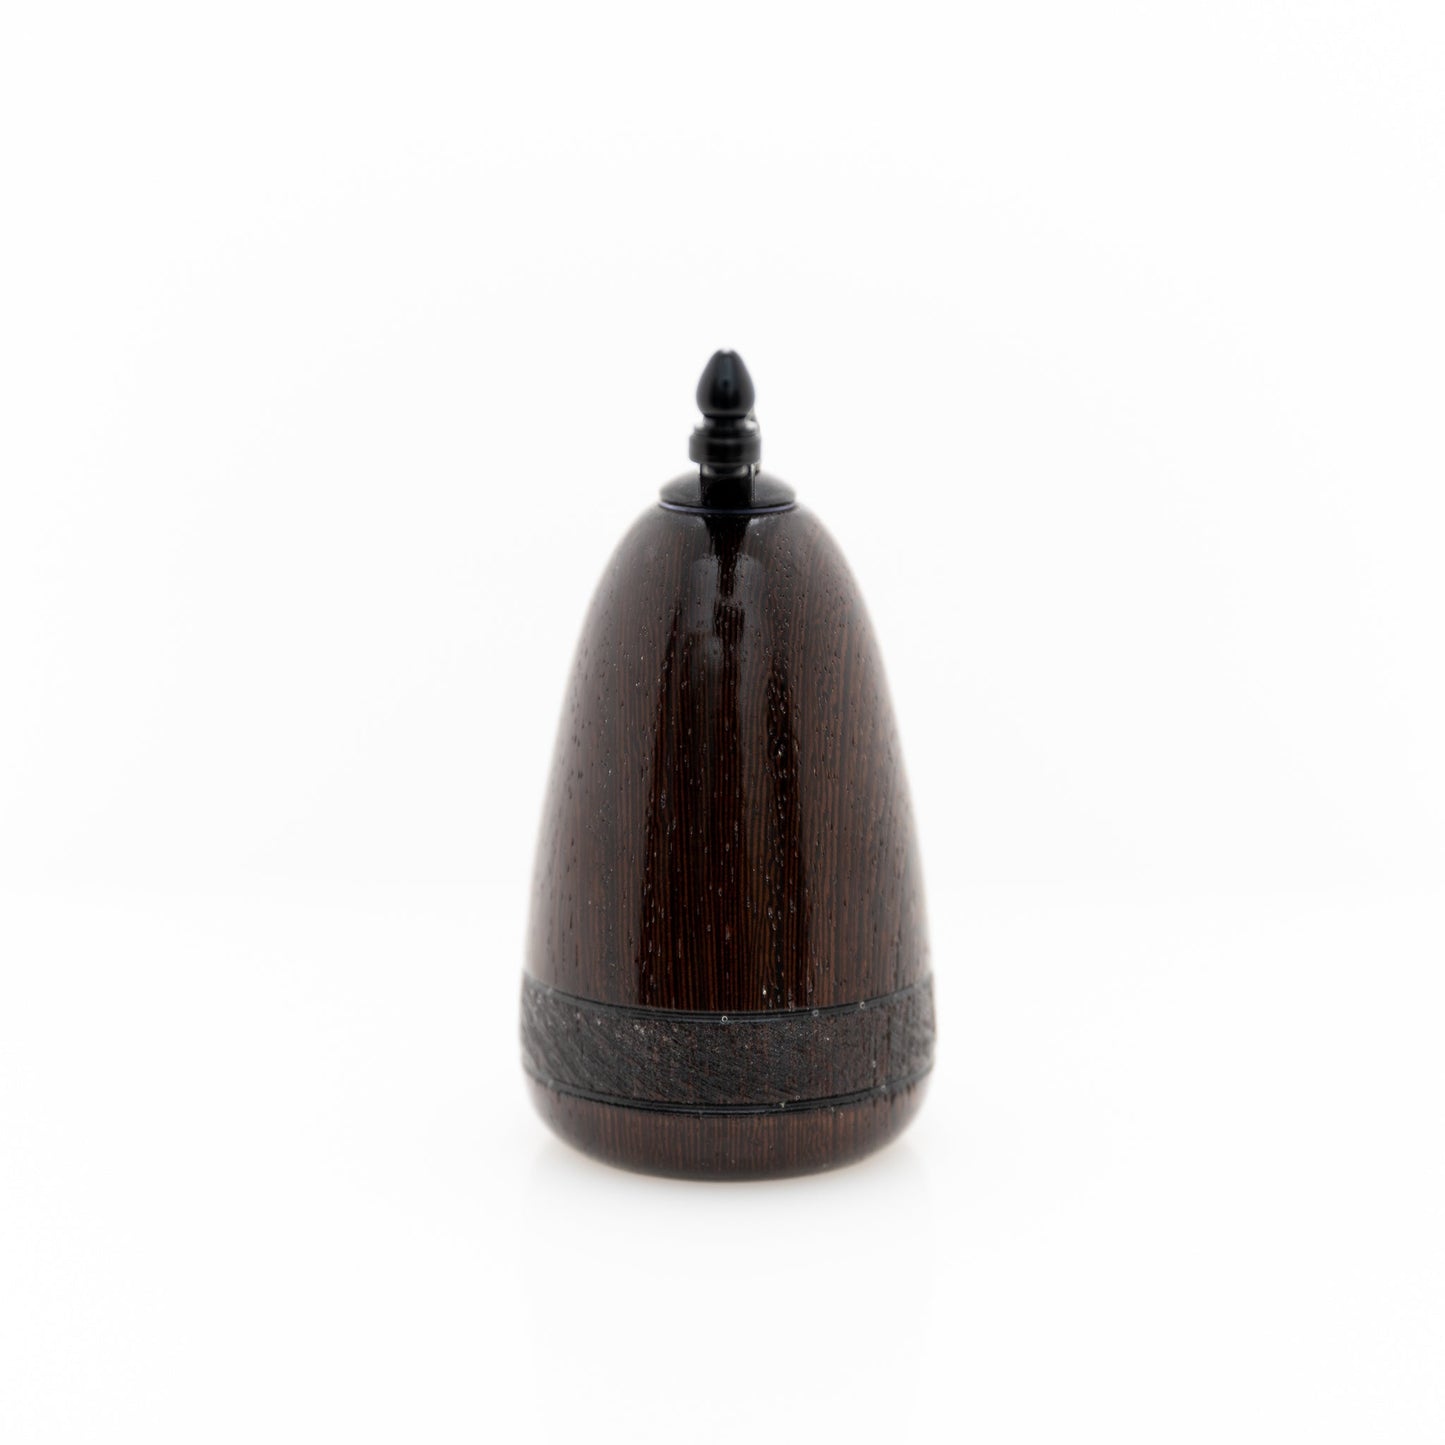 handmade wenge wood salt or peppermill with black enamel handle